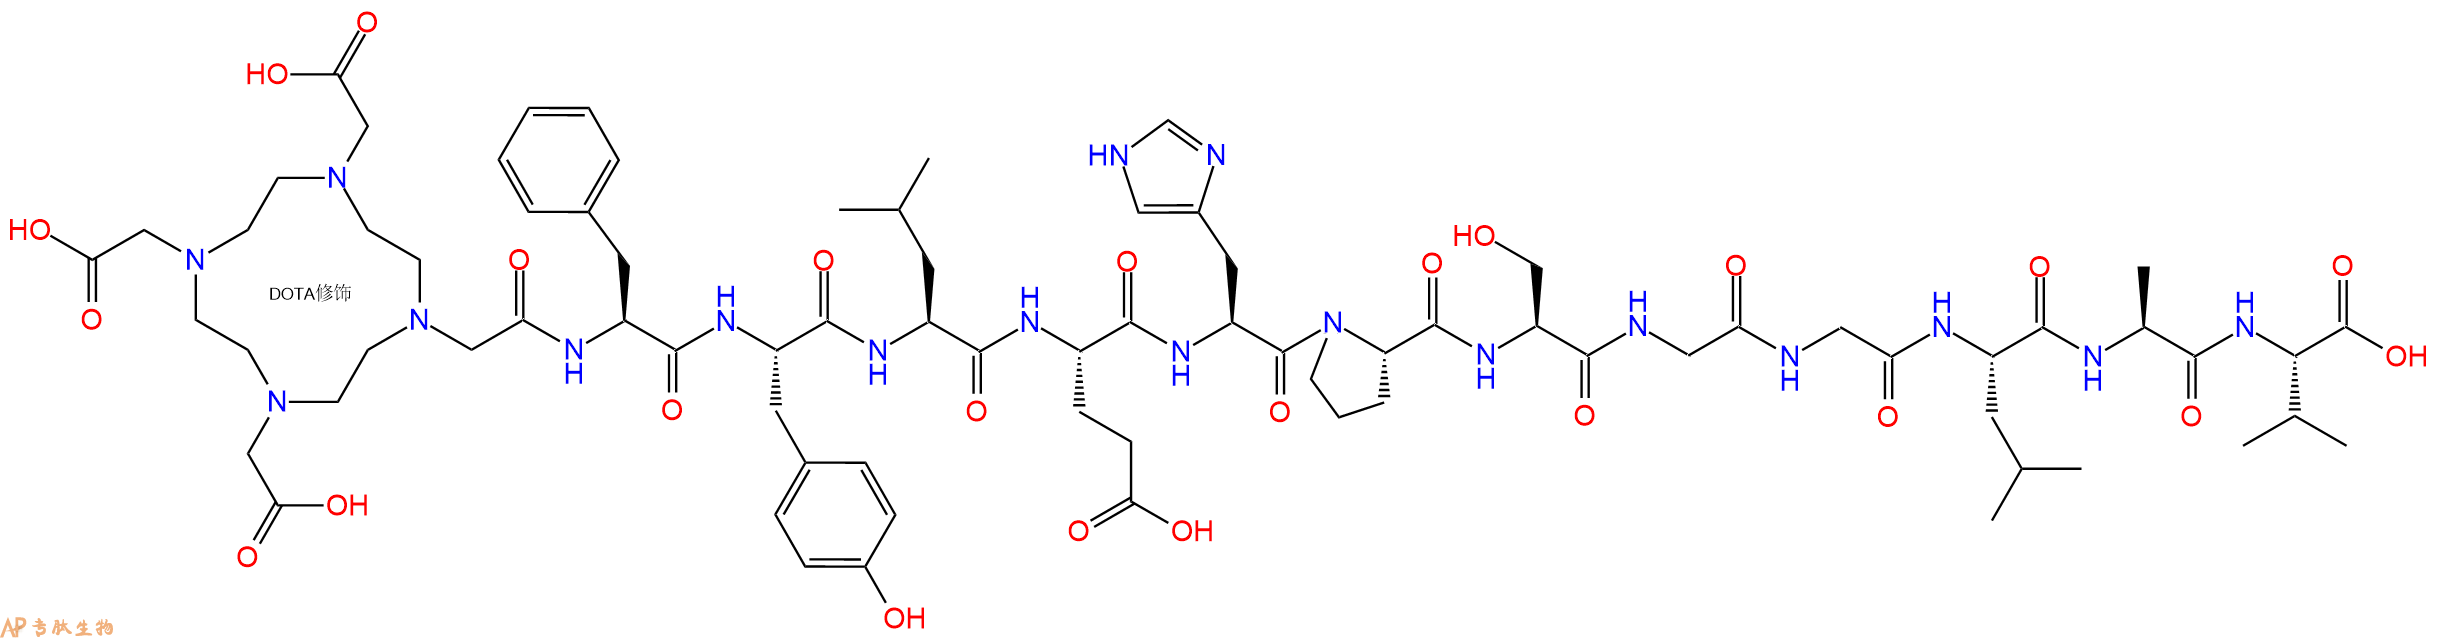 专肽生物产品DOTA-Phe-Tyr-Leu-Glu-His-Pro-Ser-Gly-Gly-Leu-Ala-Val-COOH